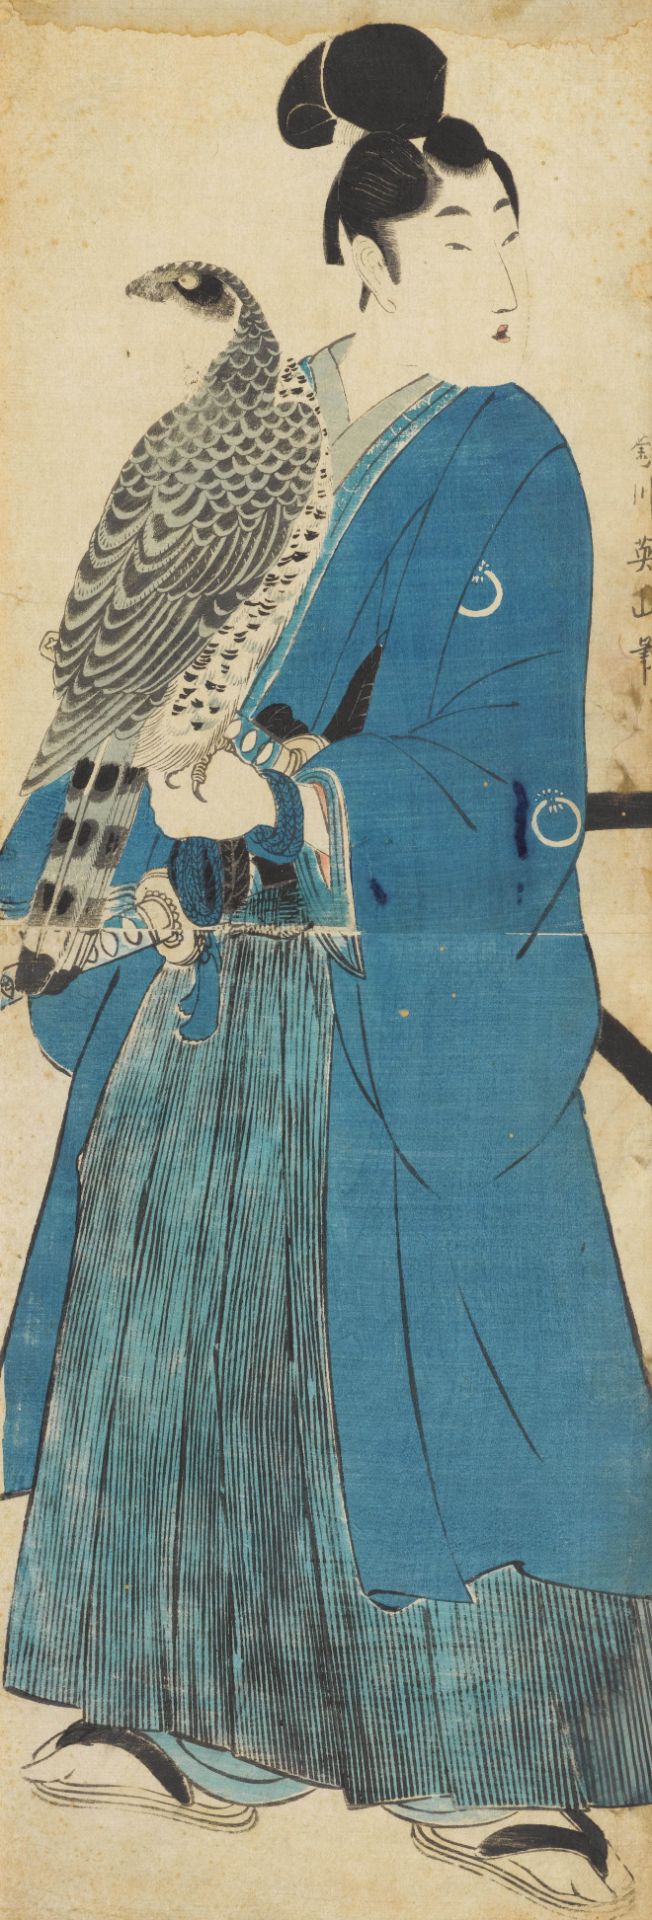 A WOODBLOCK PRINT BY KIKUGAWA EIZAN (1787-1867).